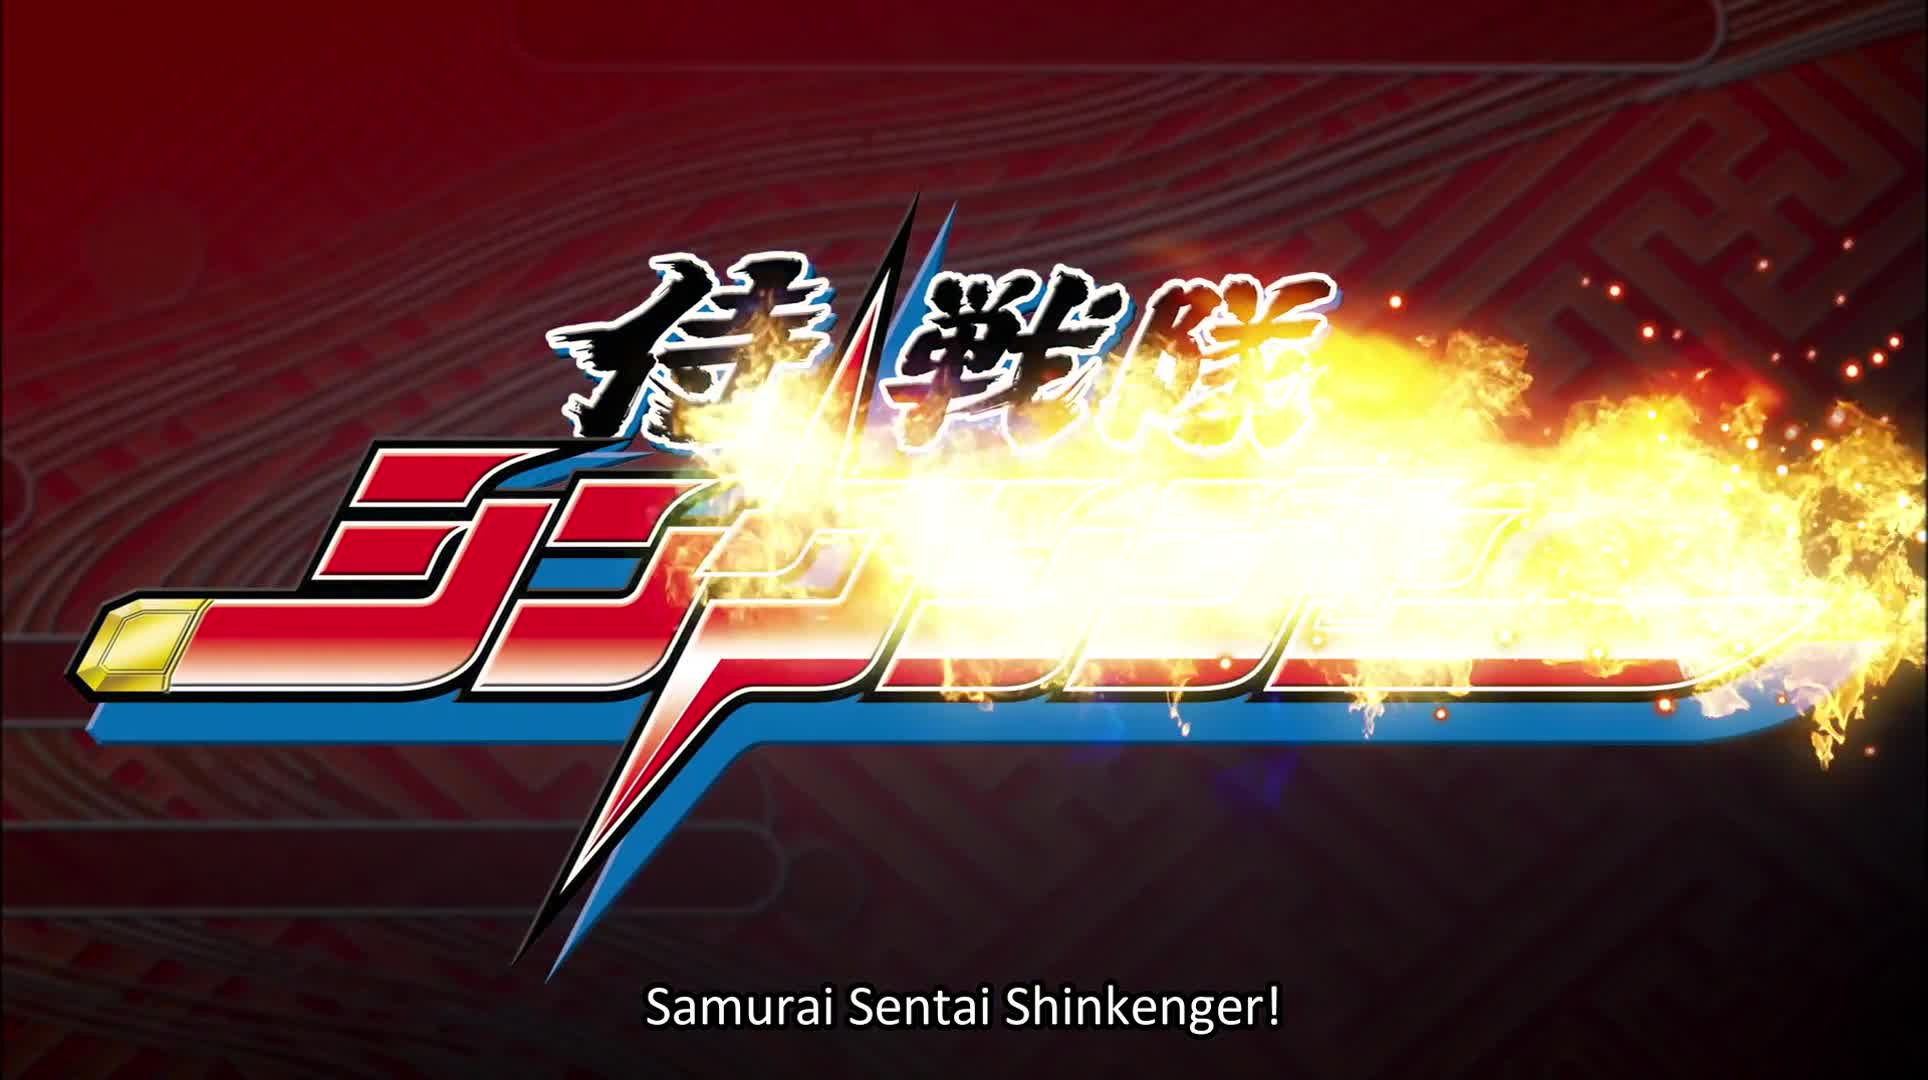 Samurai Sentai Shinkenger